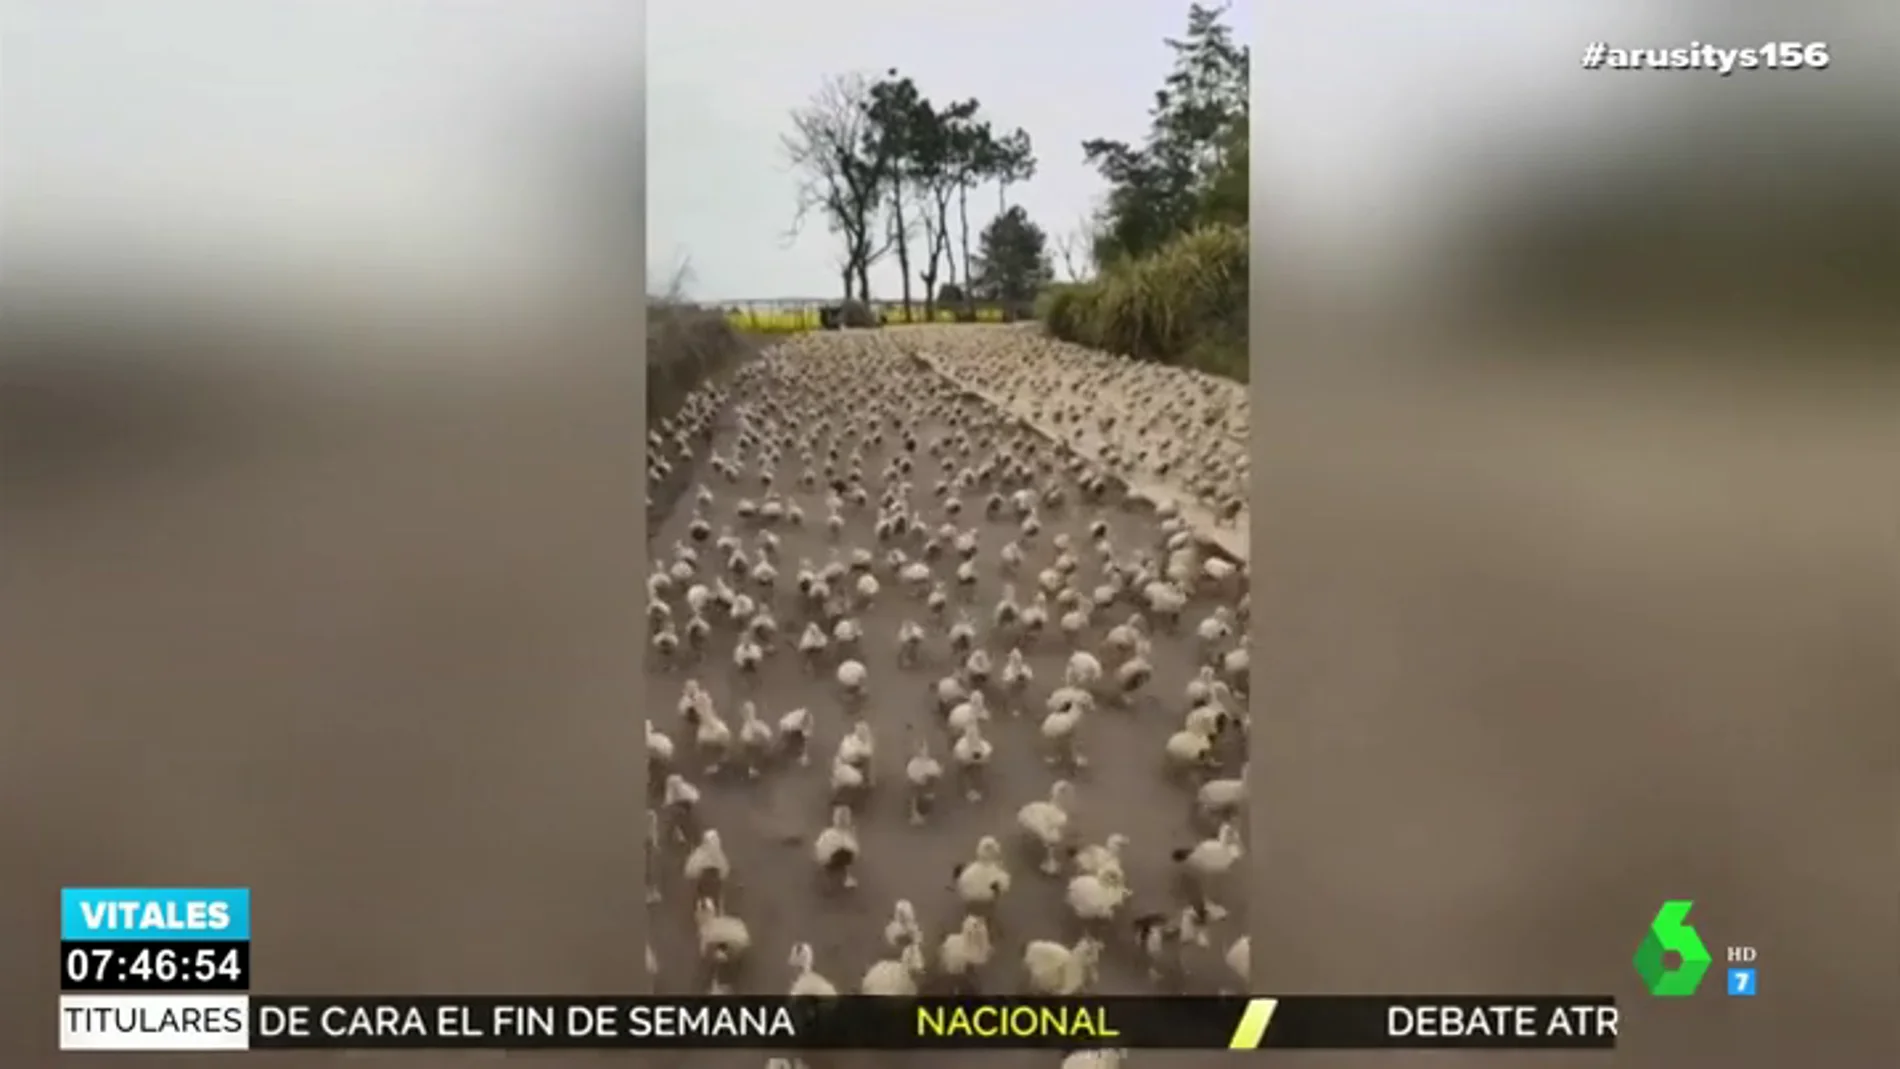 Impactante imagen: así invaden centenares de patos una carretera en China